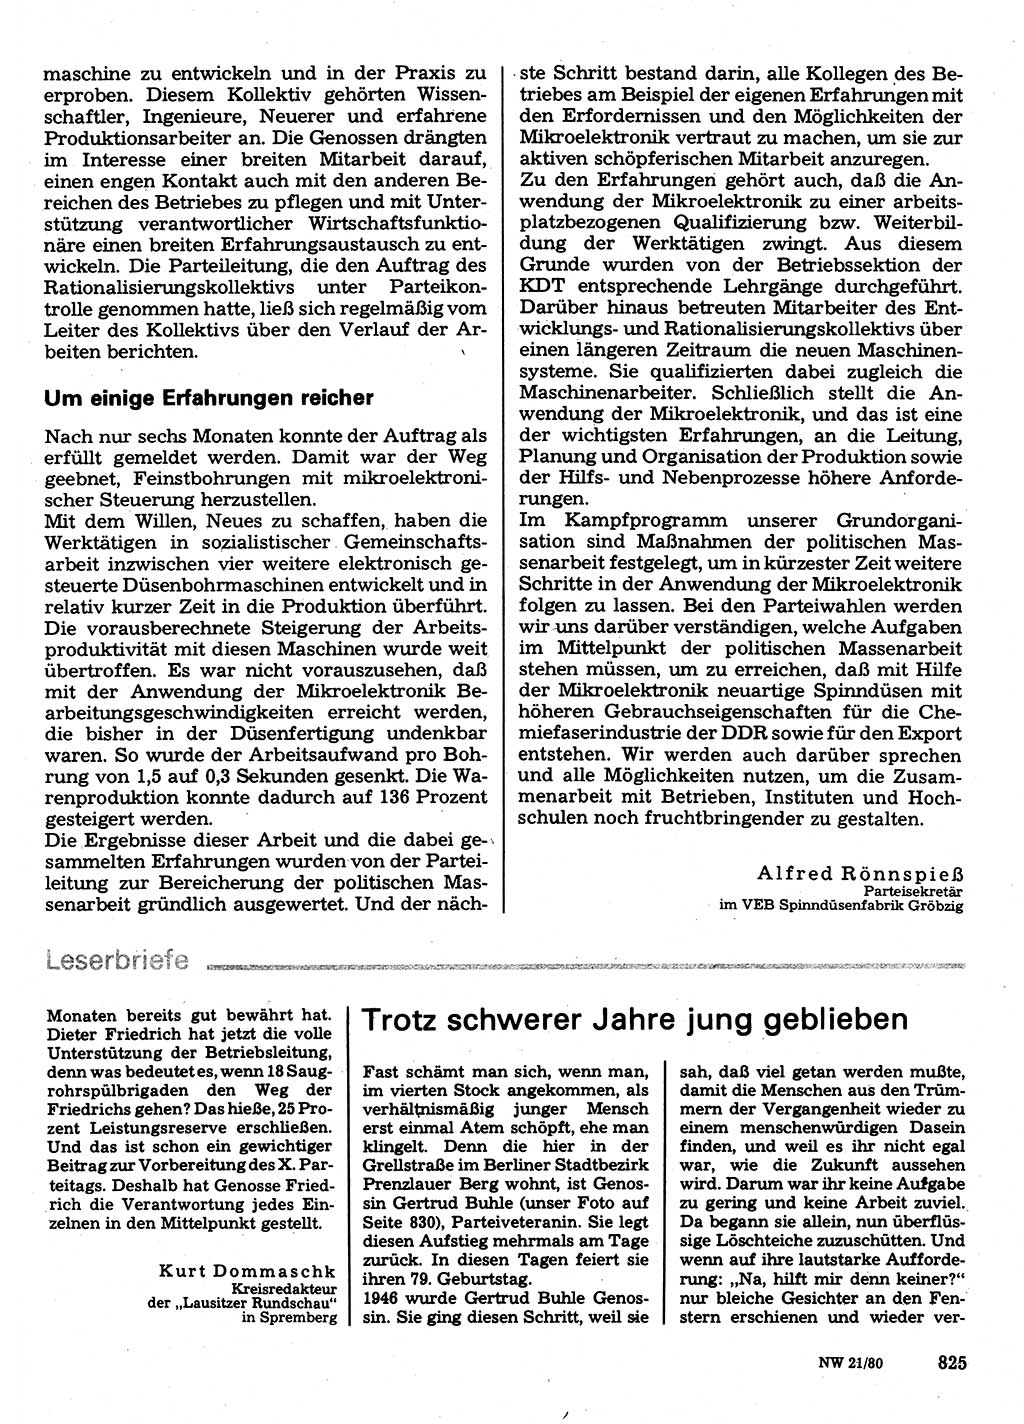 Neuer Weg (NW), Organ des Zentralkomitees (ZK) der SED (Sozialistische Einheitspartei Deutschlands) für Fragen des Parteilebens, 35. Jahrgang [Deutsche Demokratische Republik (DDR)] 1980, Seite 825 (NW ZK SED DDR 1980, S. 825)